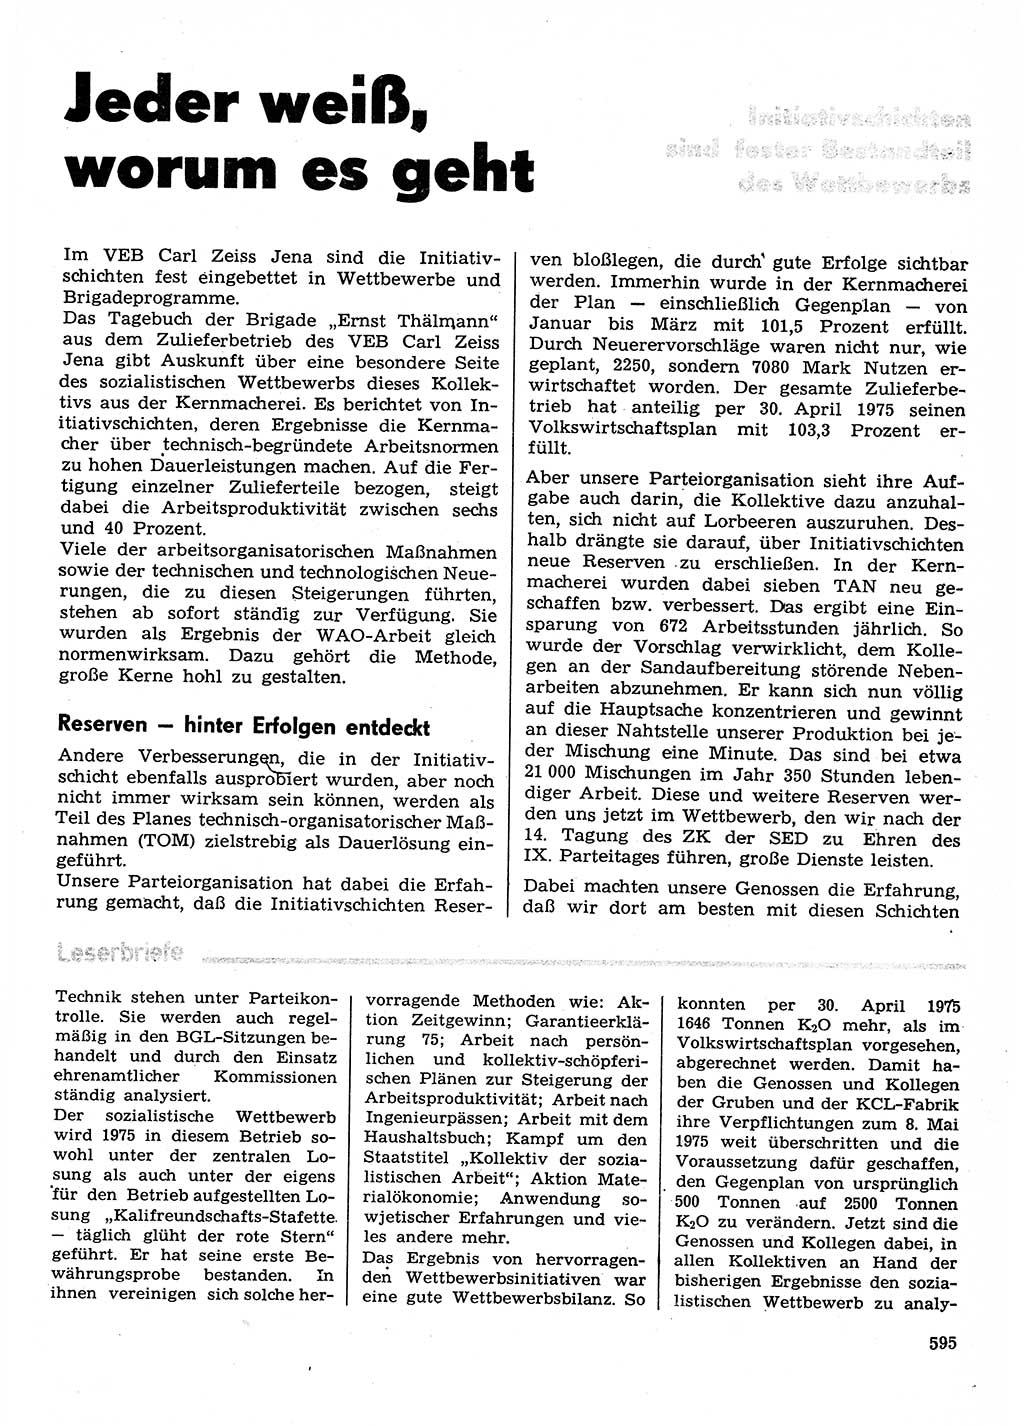 Neuer Weg (NW), Organ des Zentralkomitees (ZK) der SED (Sozialistische Einheitspartei Deutschlands) für Fragen des Parteilebens, 30. Jahrgang [Deutsche Demokratische Republik (DDR)] 1975, Seite 595 (NW ZK SED DDR 1975, S. 595)